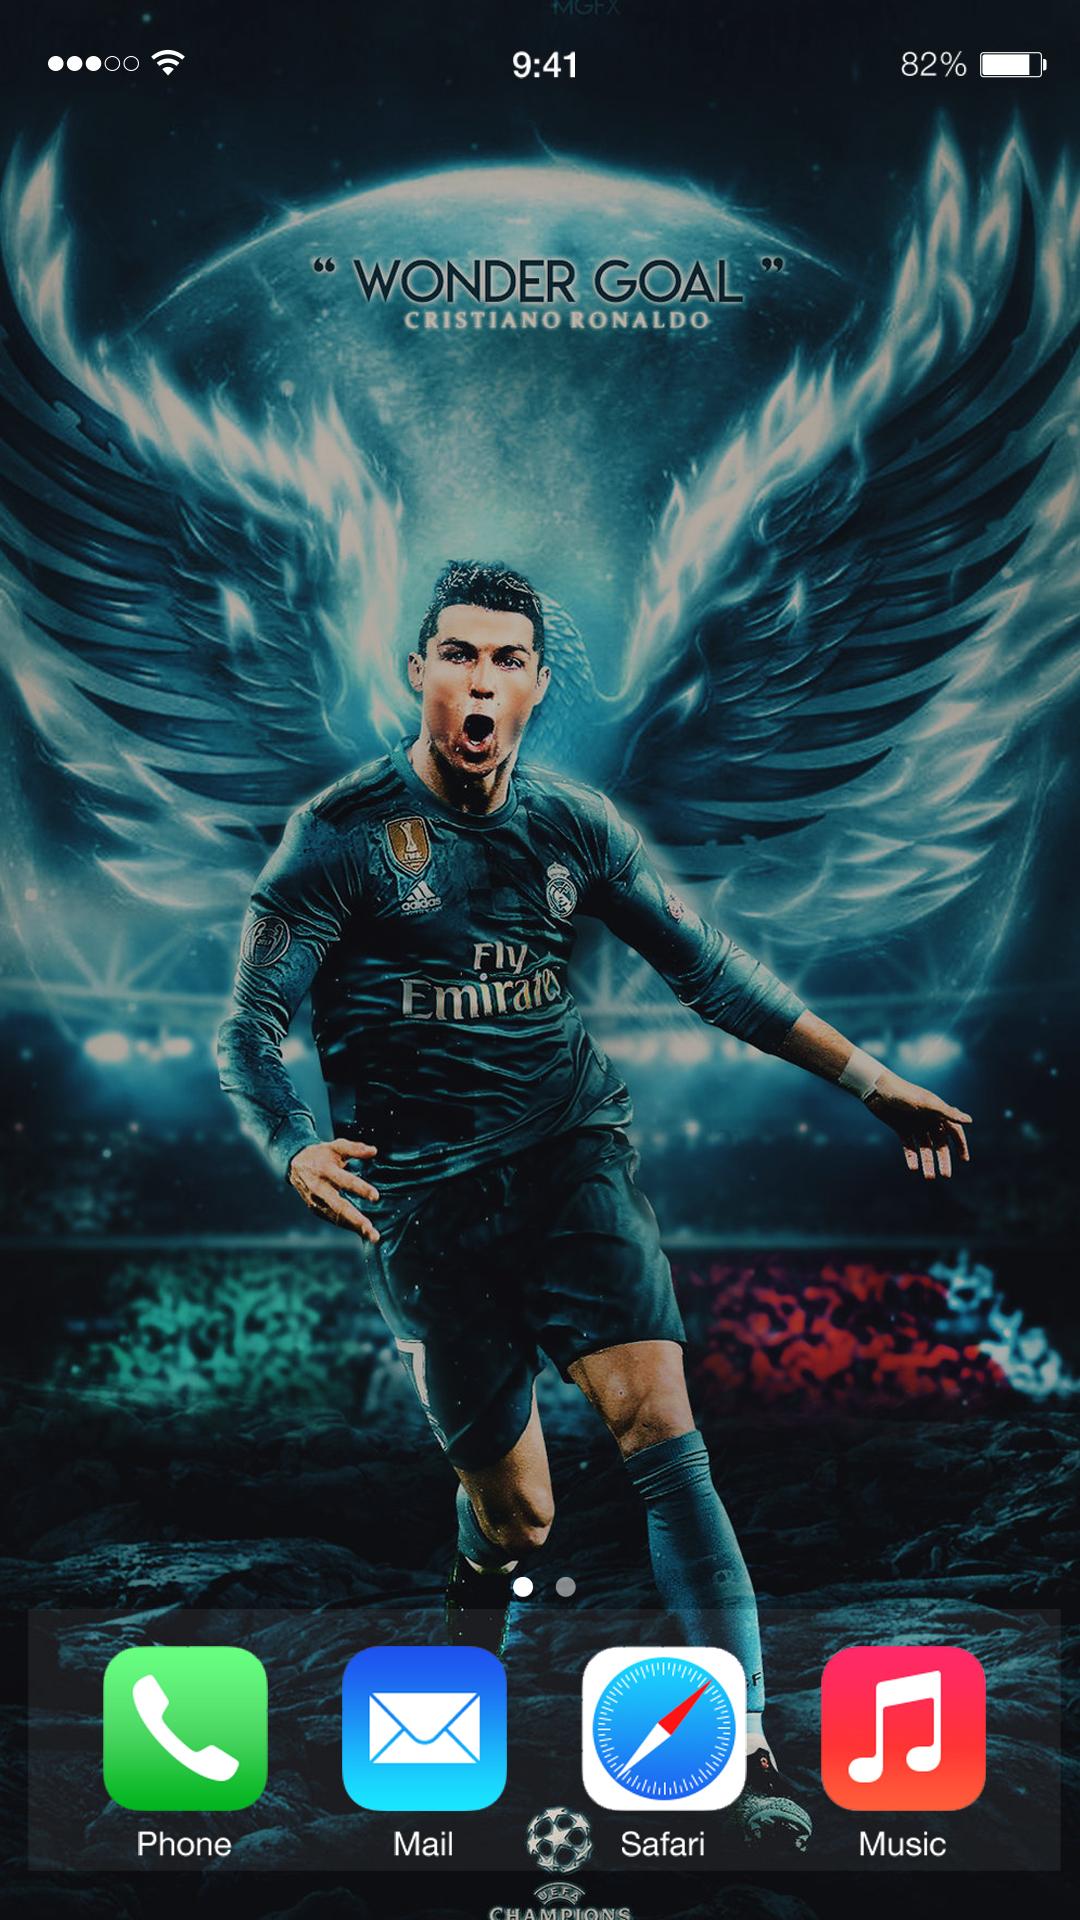 Bạn đang tìm kiếm một hình nền Cristiano Ronaldo Wallpapers CR7 HD 4K đẹp mắt? Đến đúng chỗ rồi đó! Với những hình ảnh sắc nét, sống động và mang tính biểu tượng dành riêng cho fan của CR7, bạn sẽ không thể chê vào đâu được. Hãy lựa chọn ngay hình nền này để thể hiện tình cảm và đam mê của mình dành cho người hùng của bóng đá thế giới!